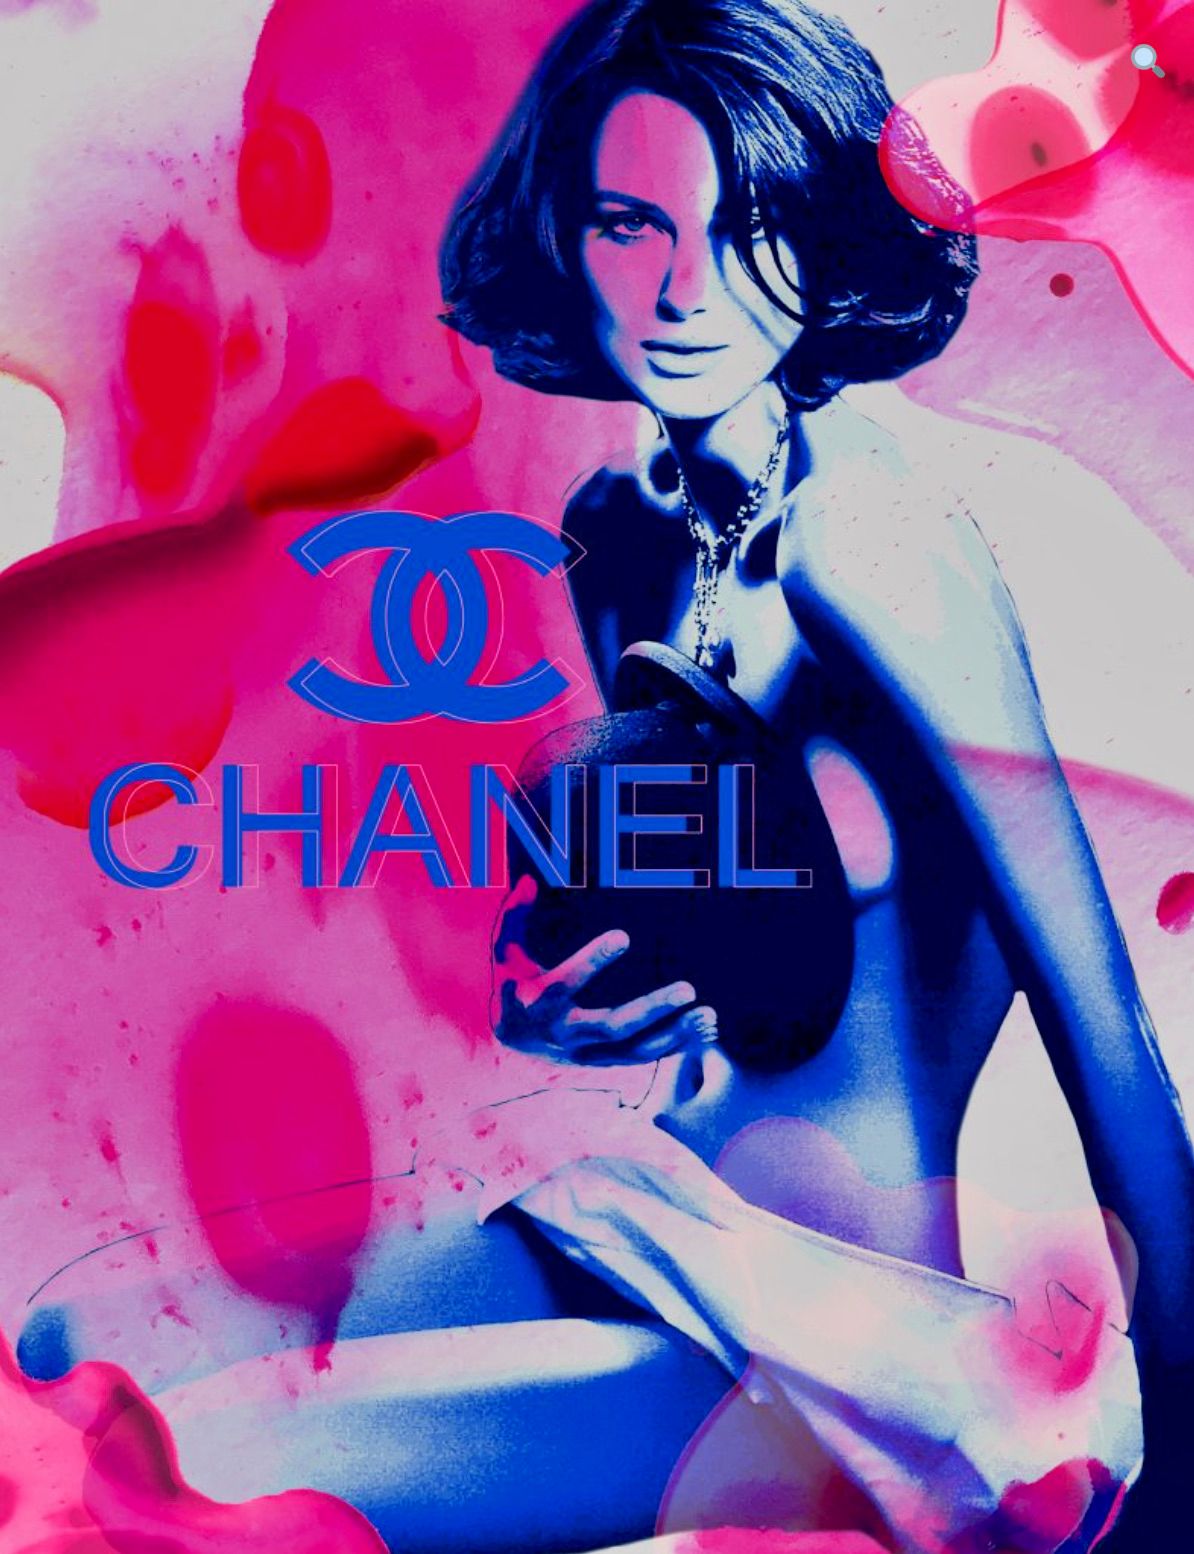 Nathali von Kretschmann abstrakte Collage Keira Knightley nackt Überlagerung Chanel  logo pinke Farbe